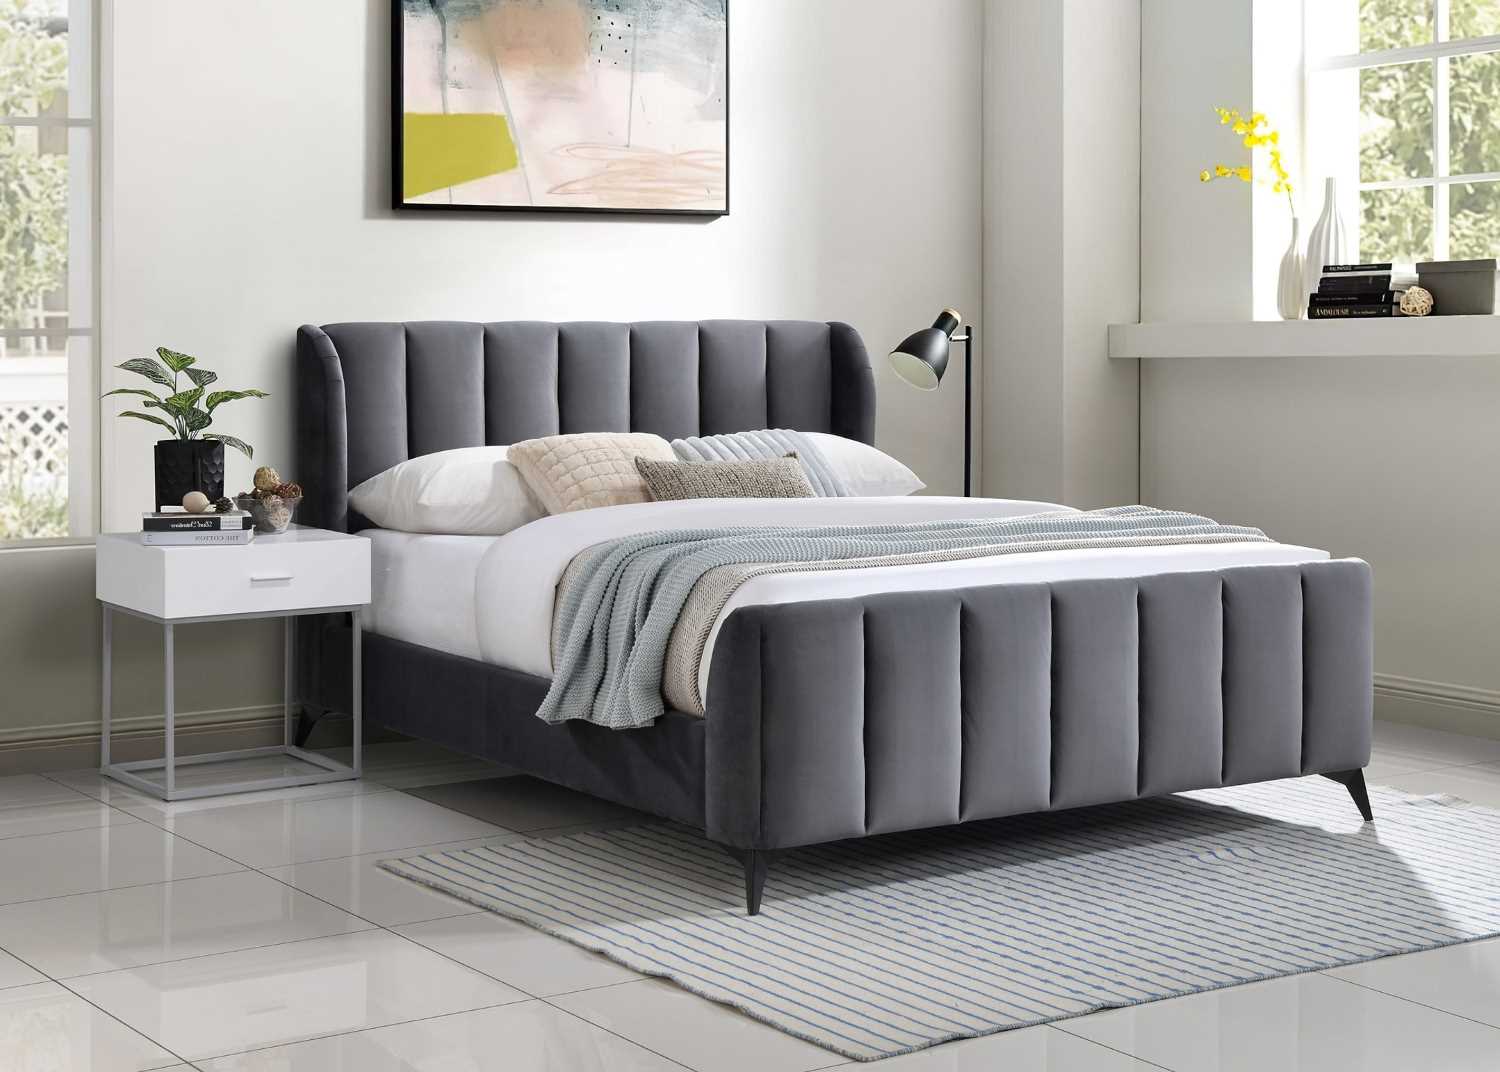 Grey Velvet Upholstered Bed 5545